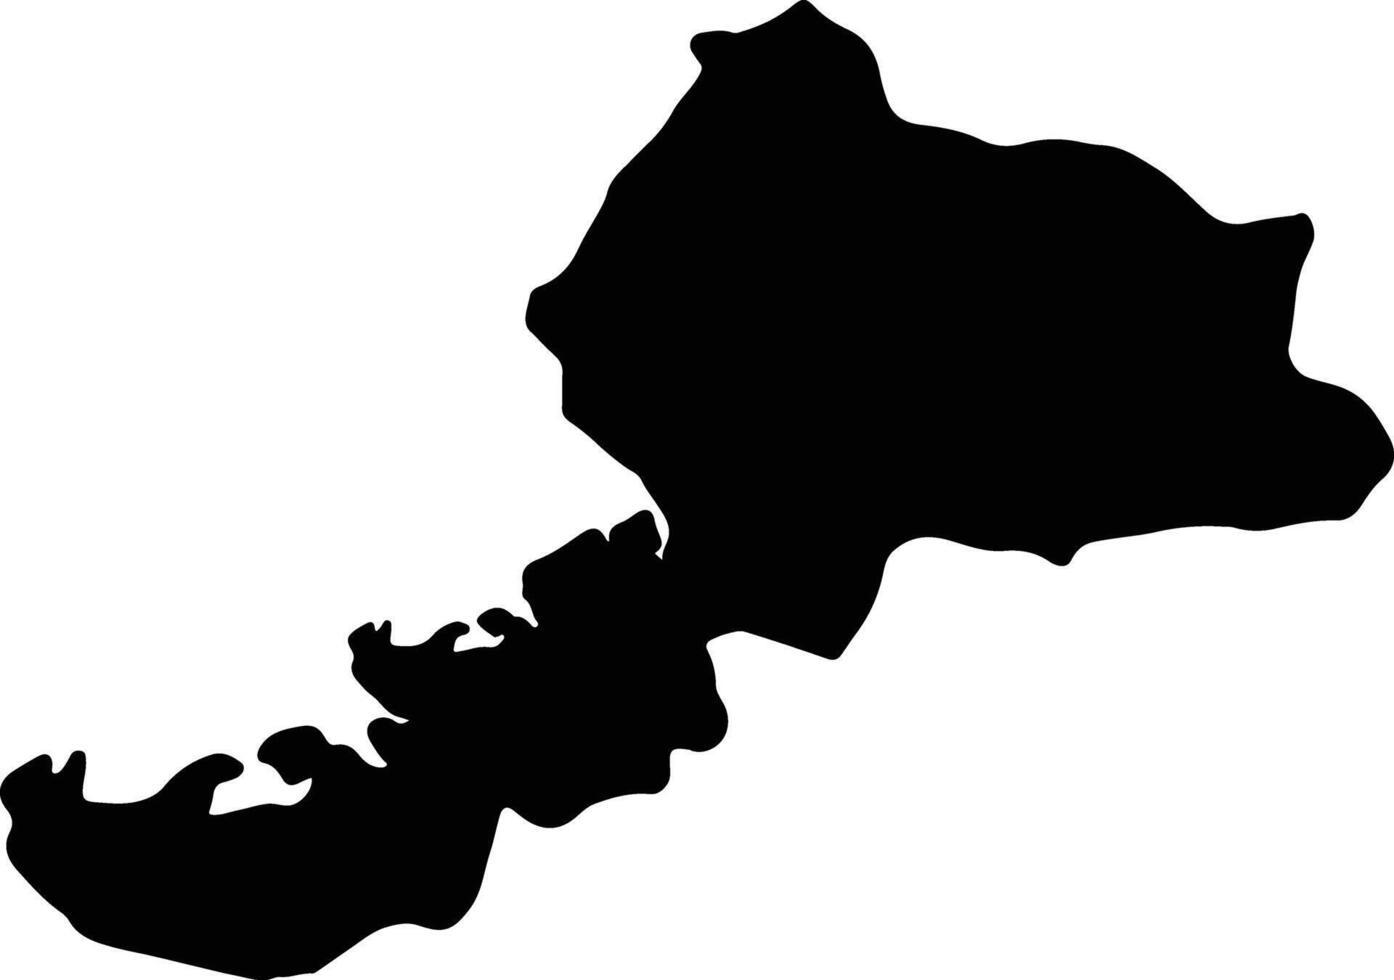 fukui Giappone silhouette carta geografica vettore